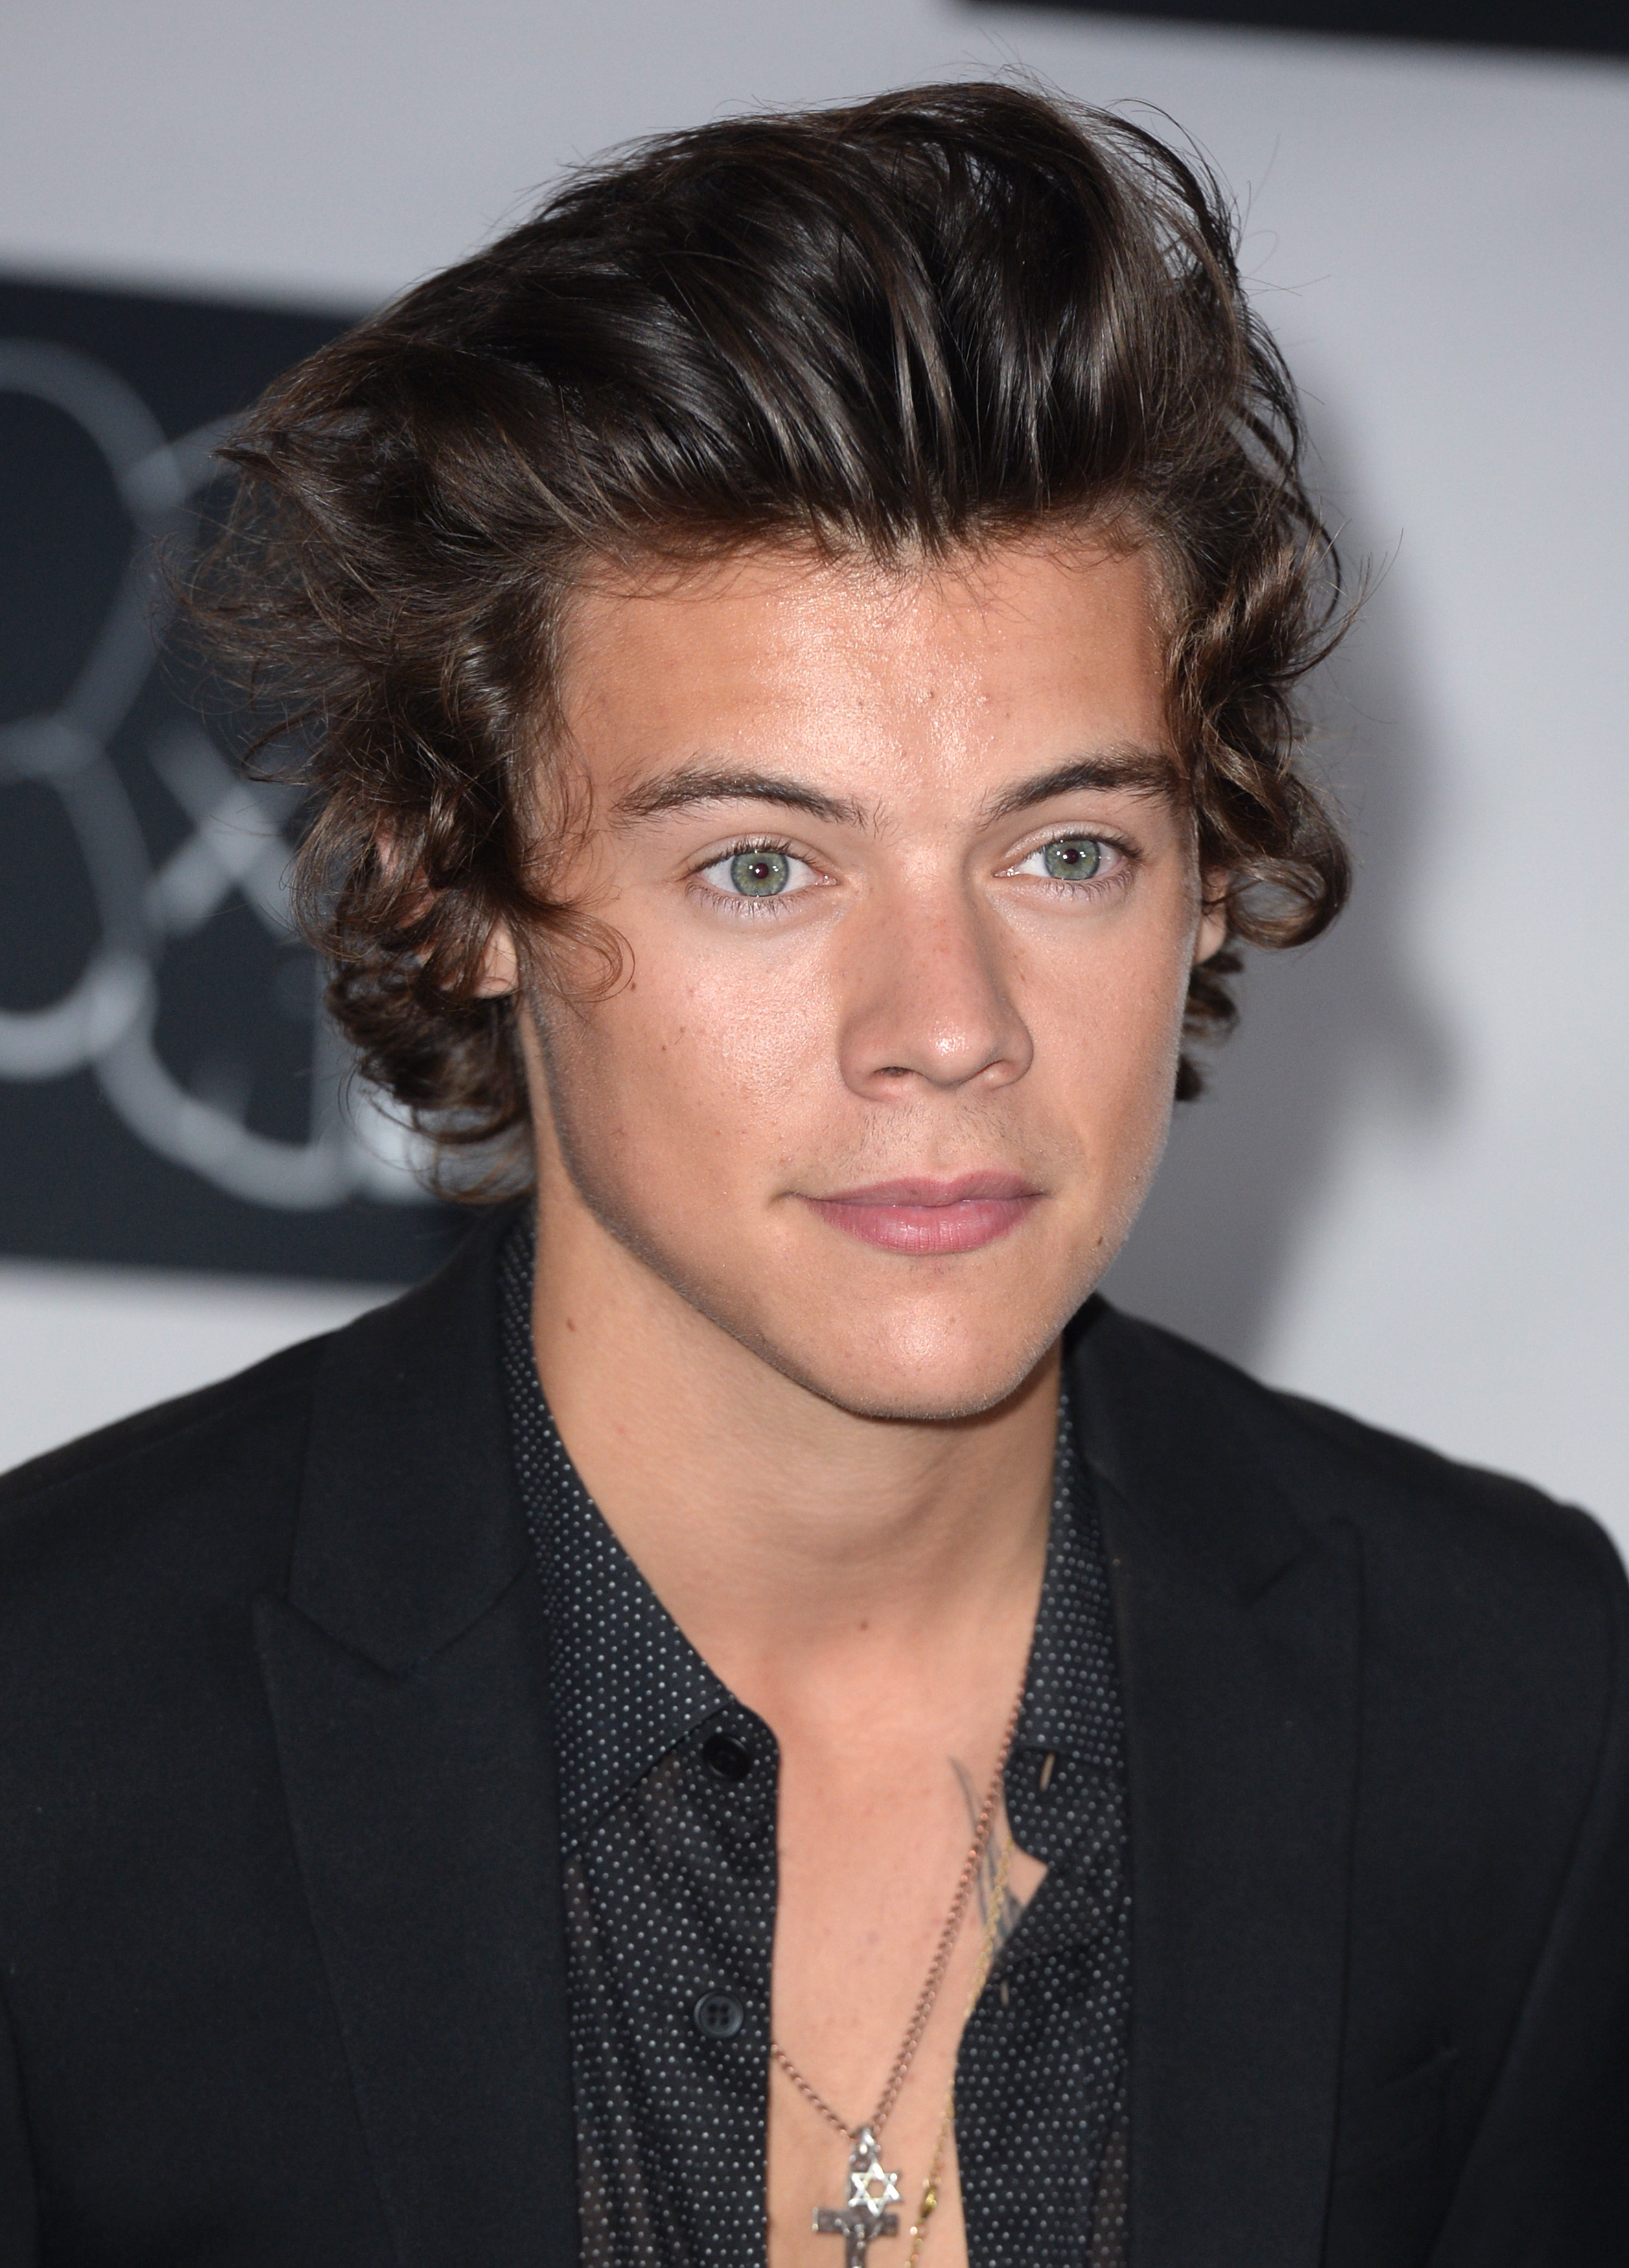 Harry Styles in 2013